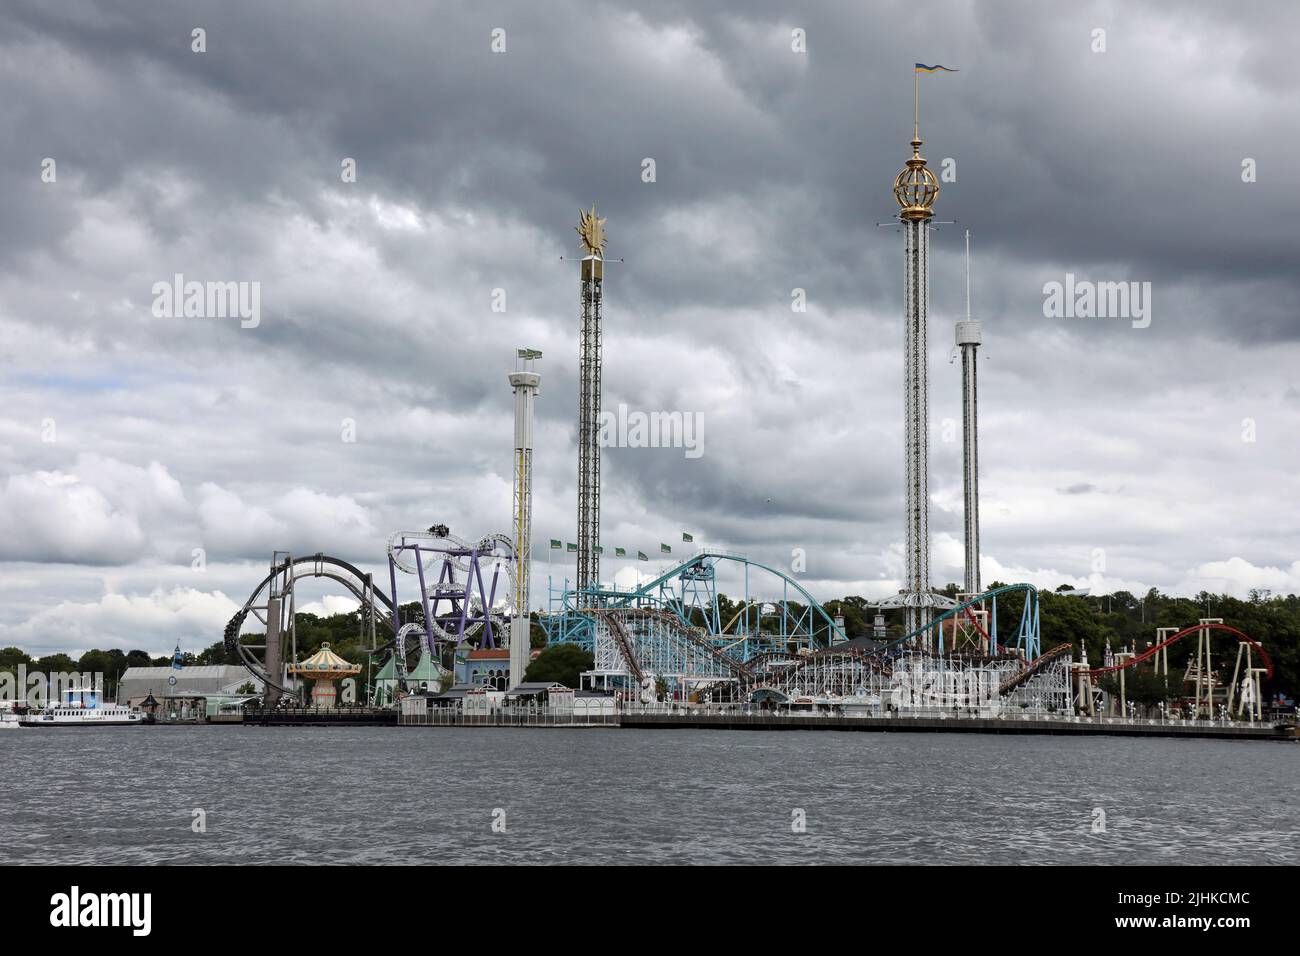 Vista del parque de atracciones Grona Lund en la isla Djurgarden en Estocolmo Foto de stock